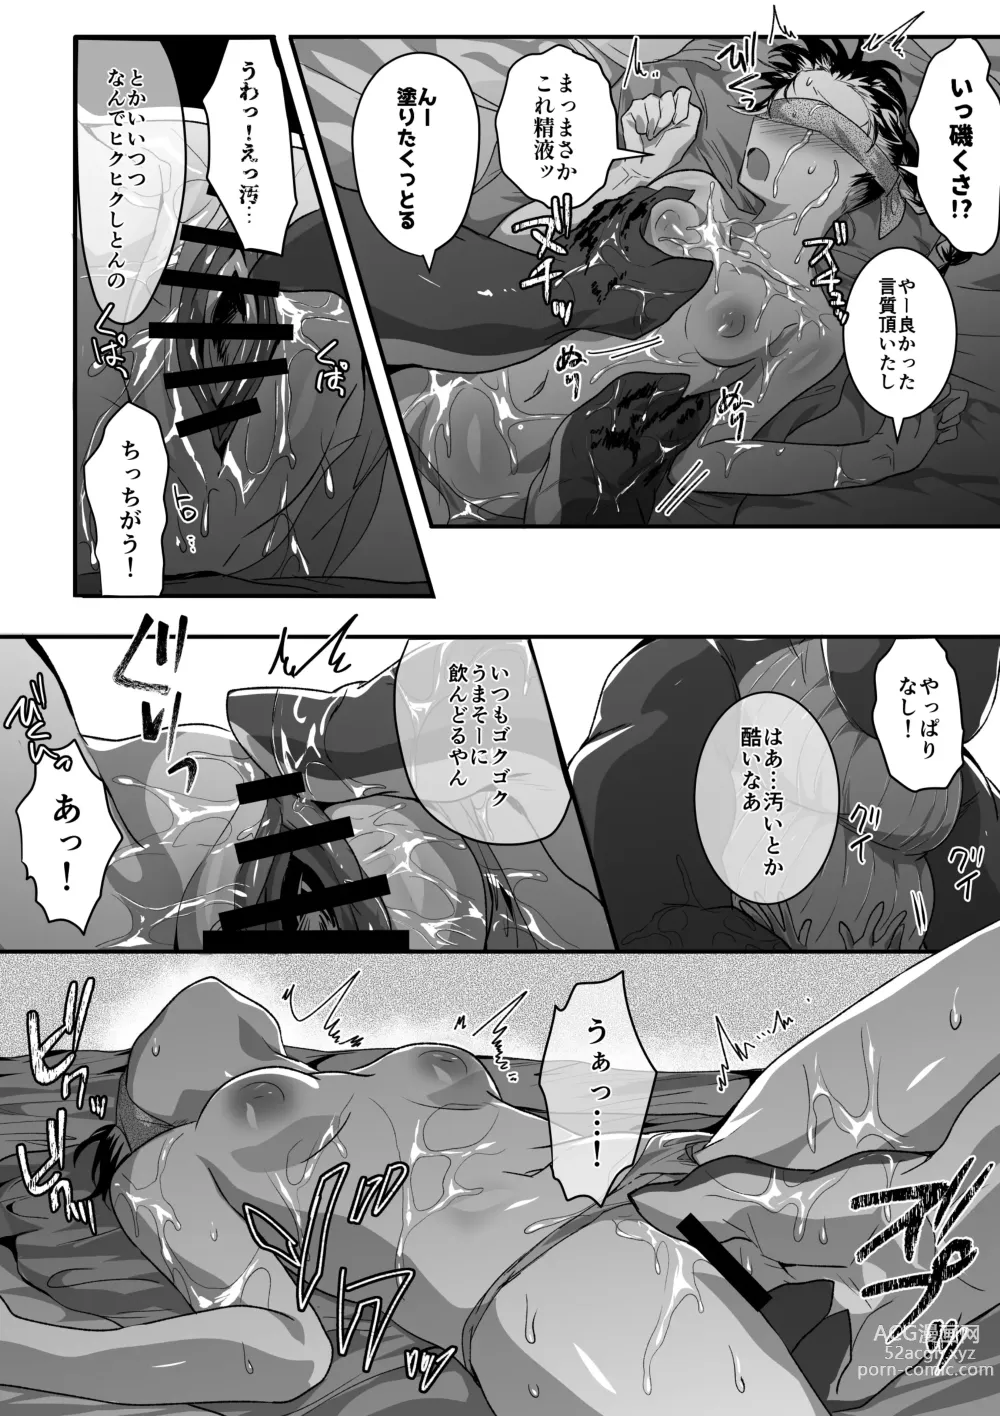 Page 6 of doujinshi Occhan Kujira to Umi Date